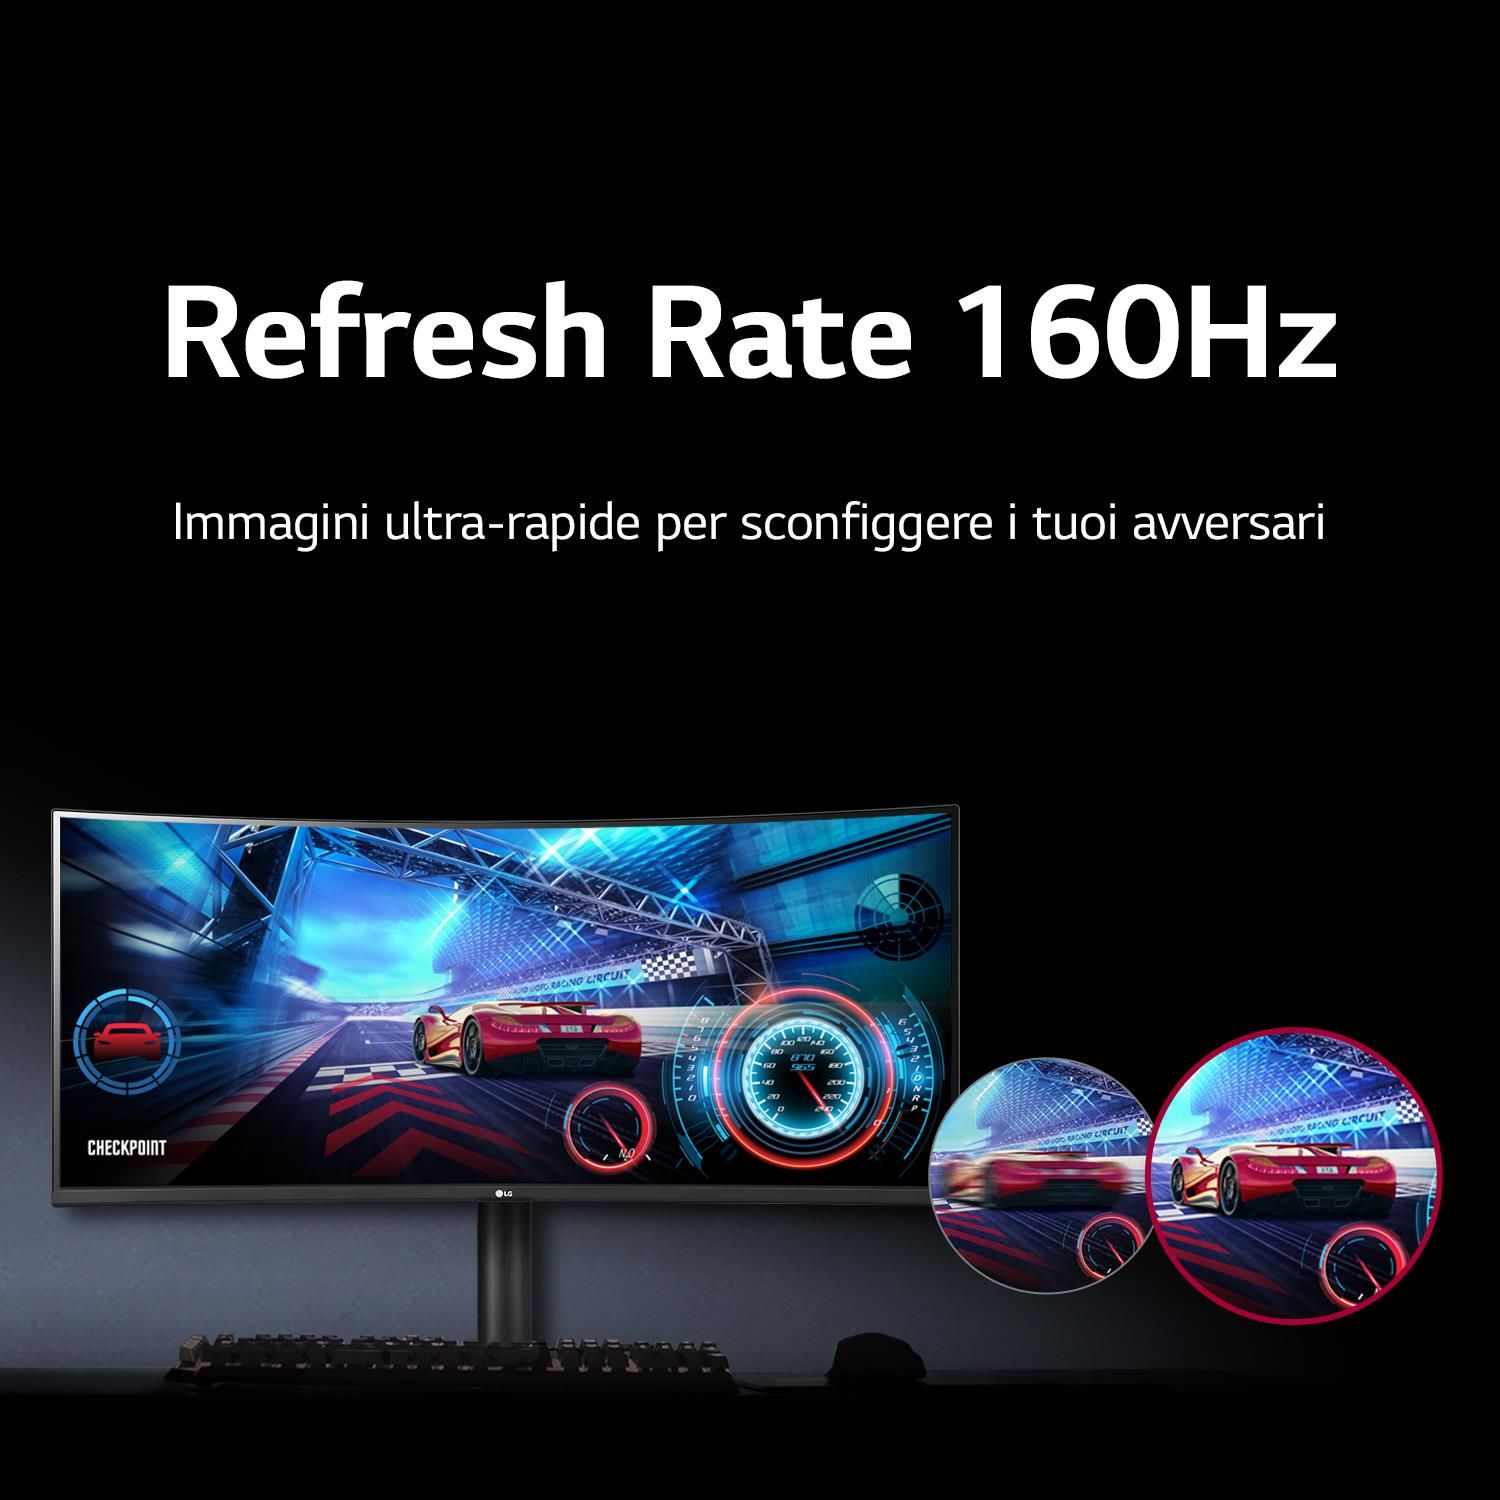 LG Monitor 34'' UltraWide Curvo WQHD, Panel VA, 160Hz, FreeSync Premium,  HDR10 (21:9) (34WP65C-B)